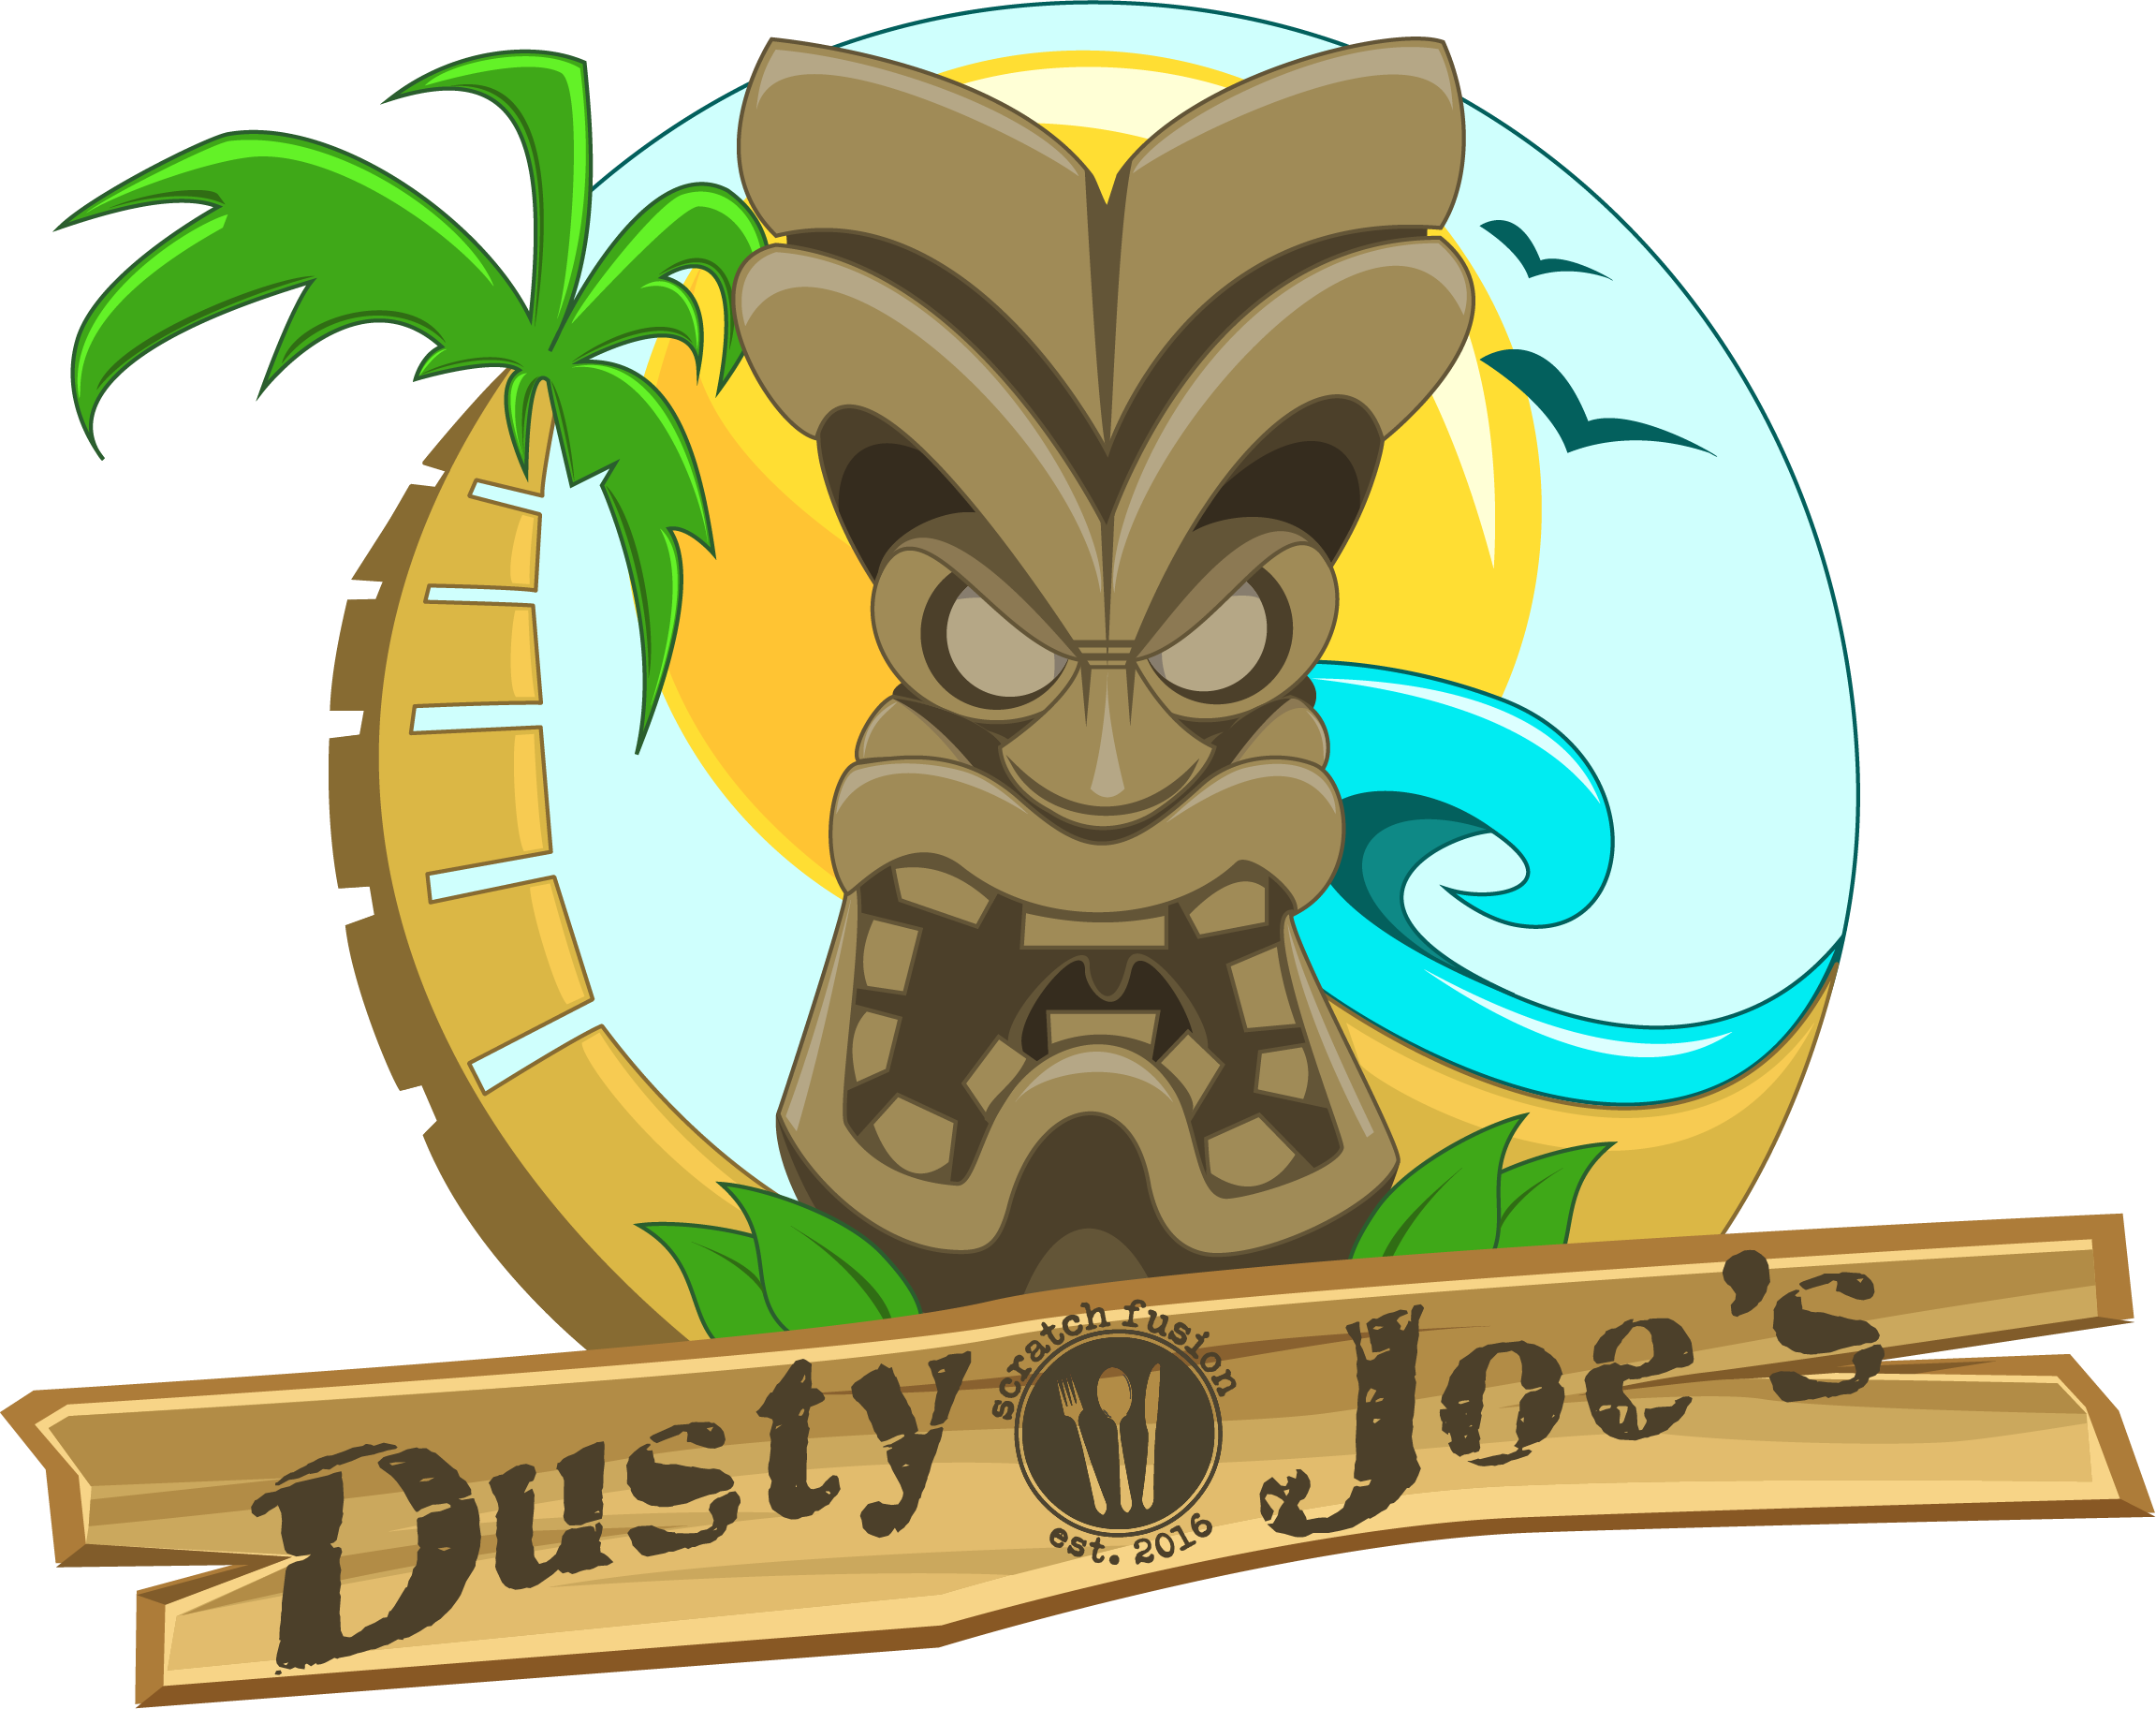 Dusty Joe's Smokin' Eats LLC